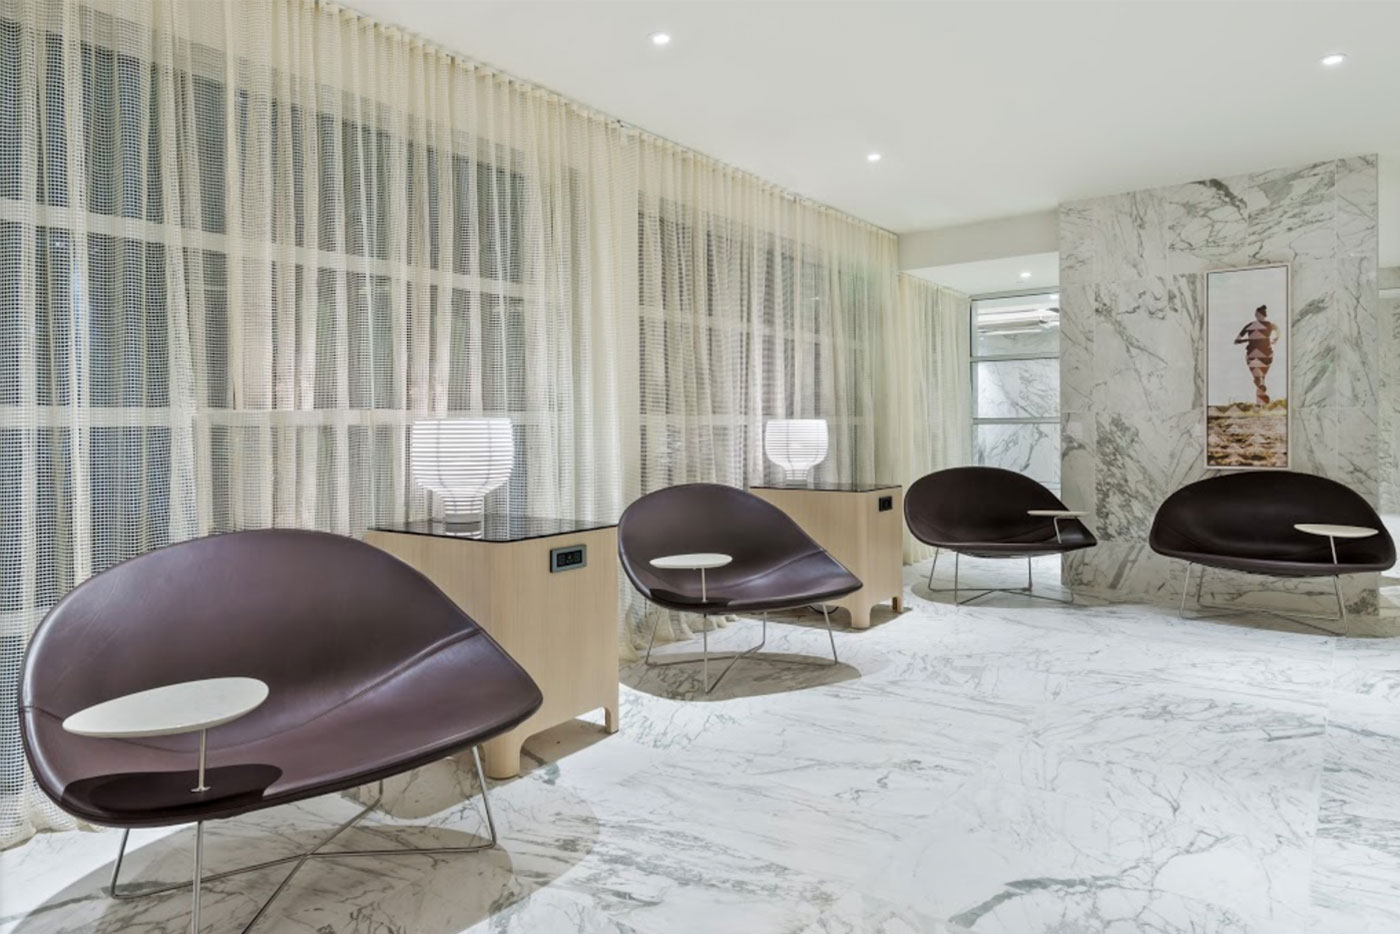 Boutique hotel furniture - Contraxx Furniture Custom Design Made In USA Living Space